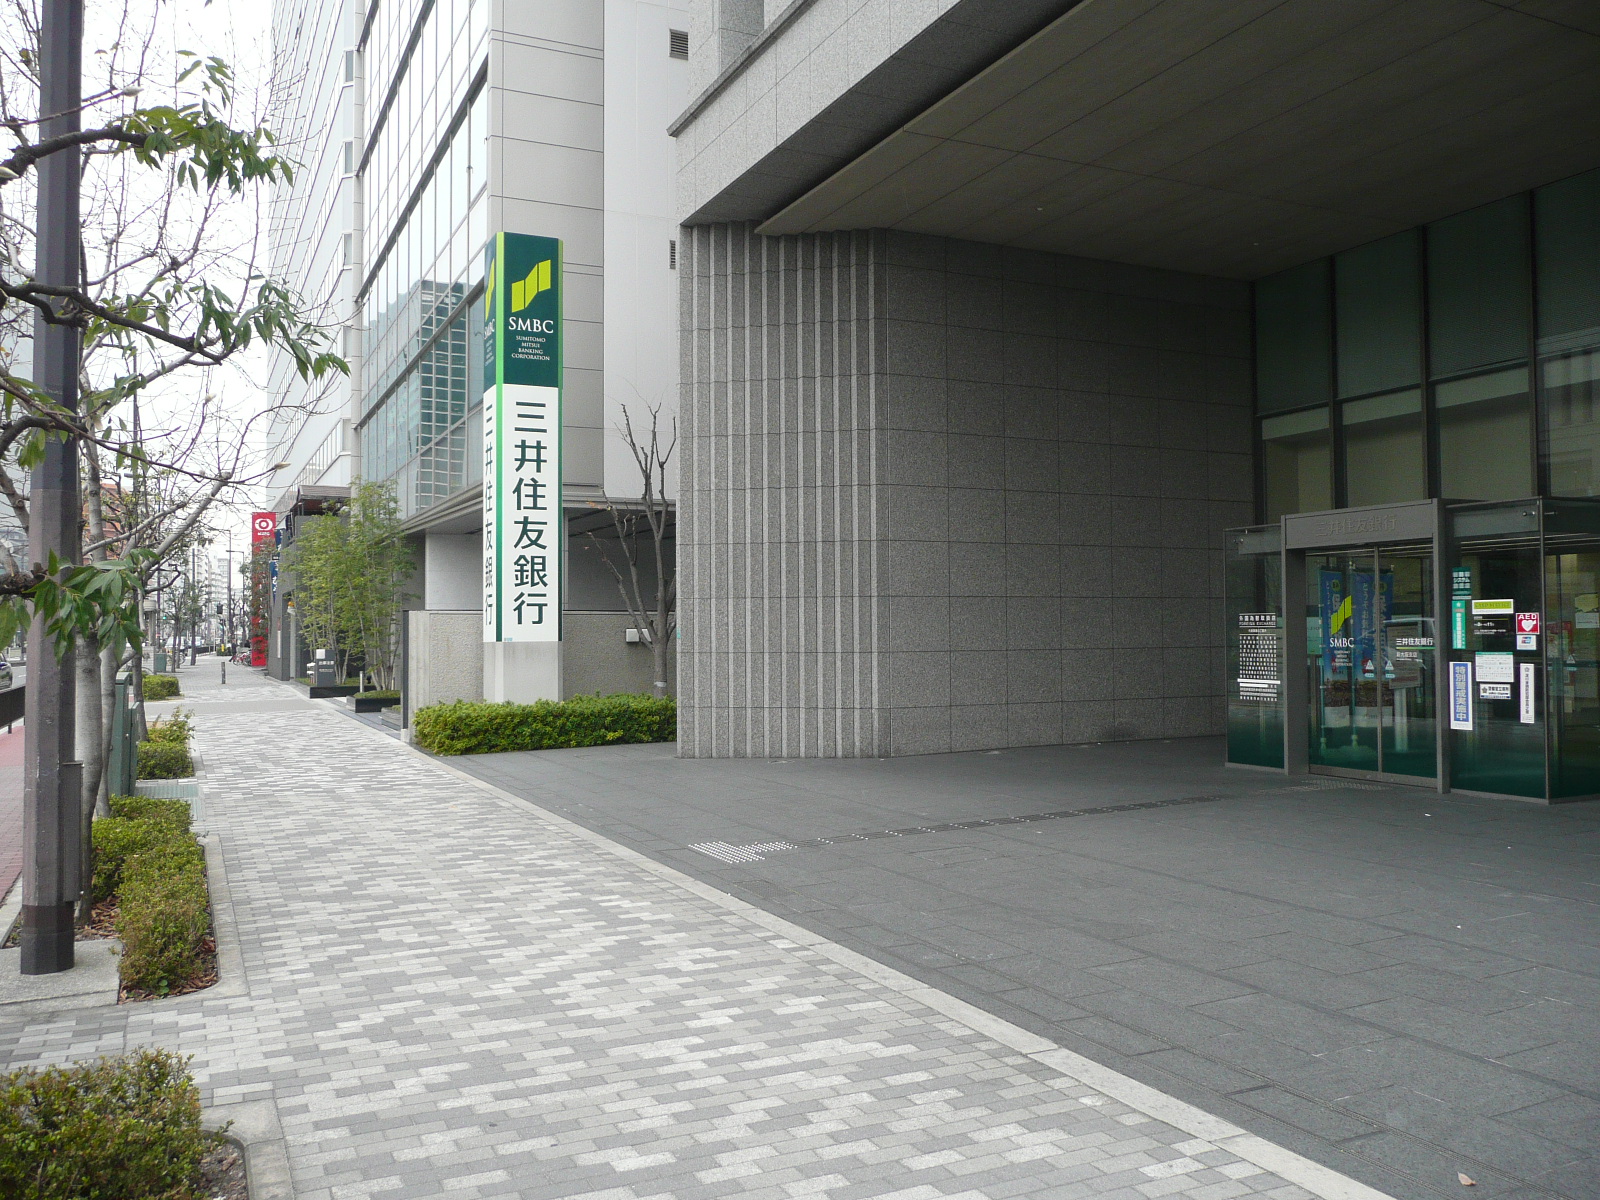 Bank. 374m to Sumitomo Mitsui Banking Corporation Osaka Branch (Bank)